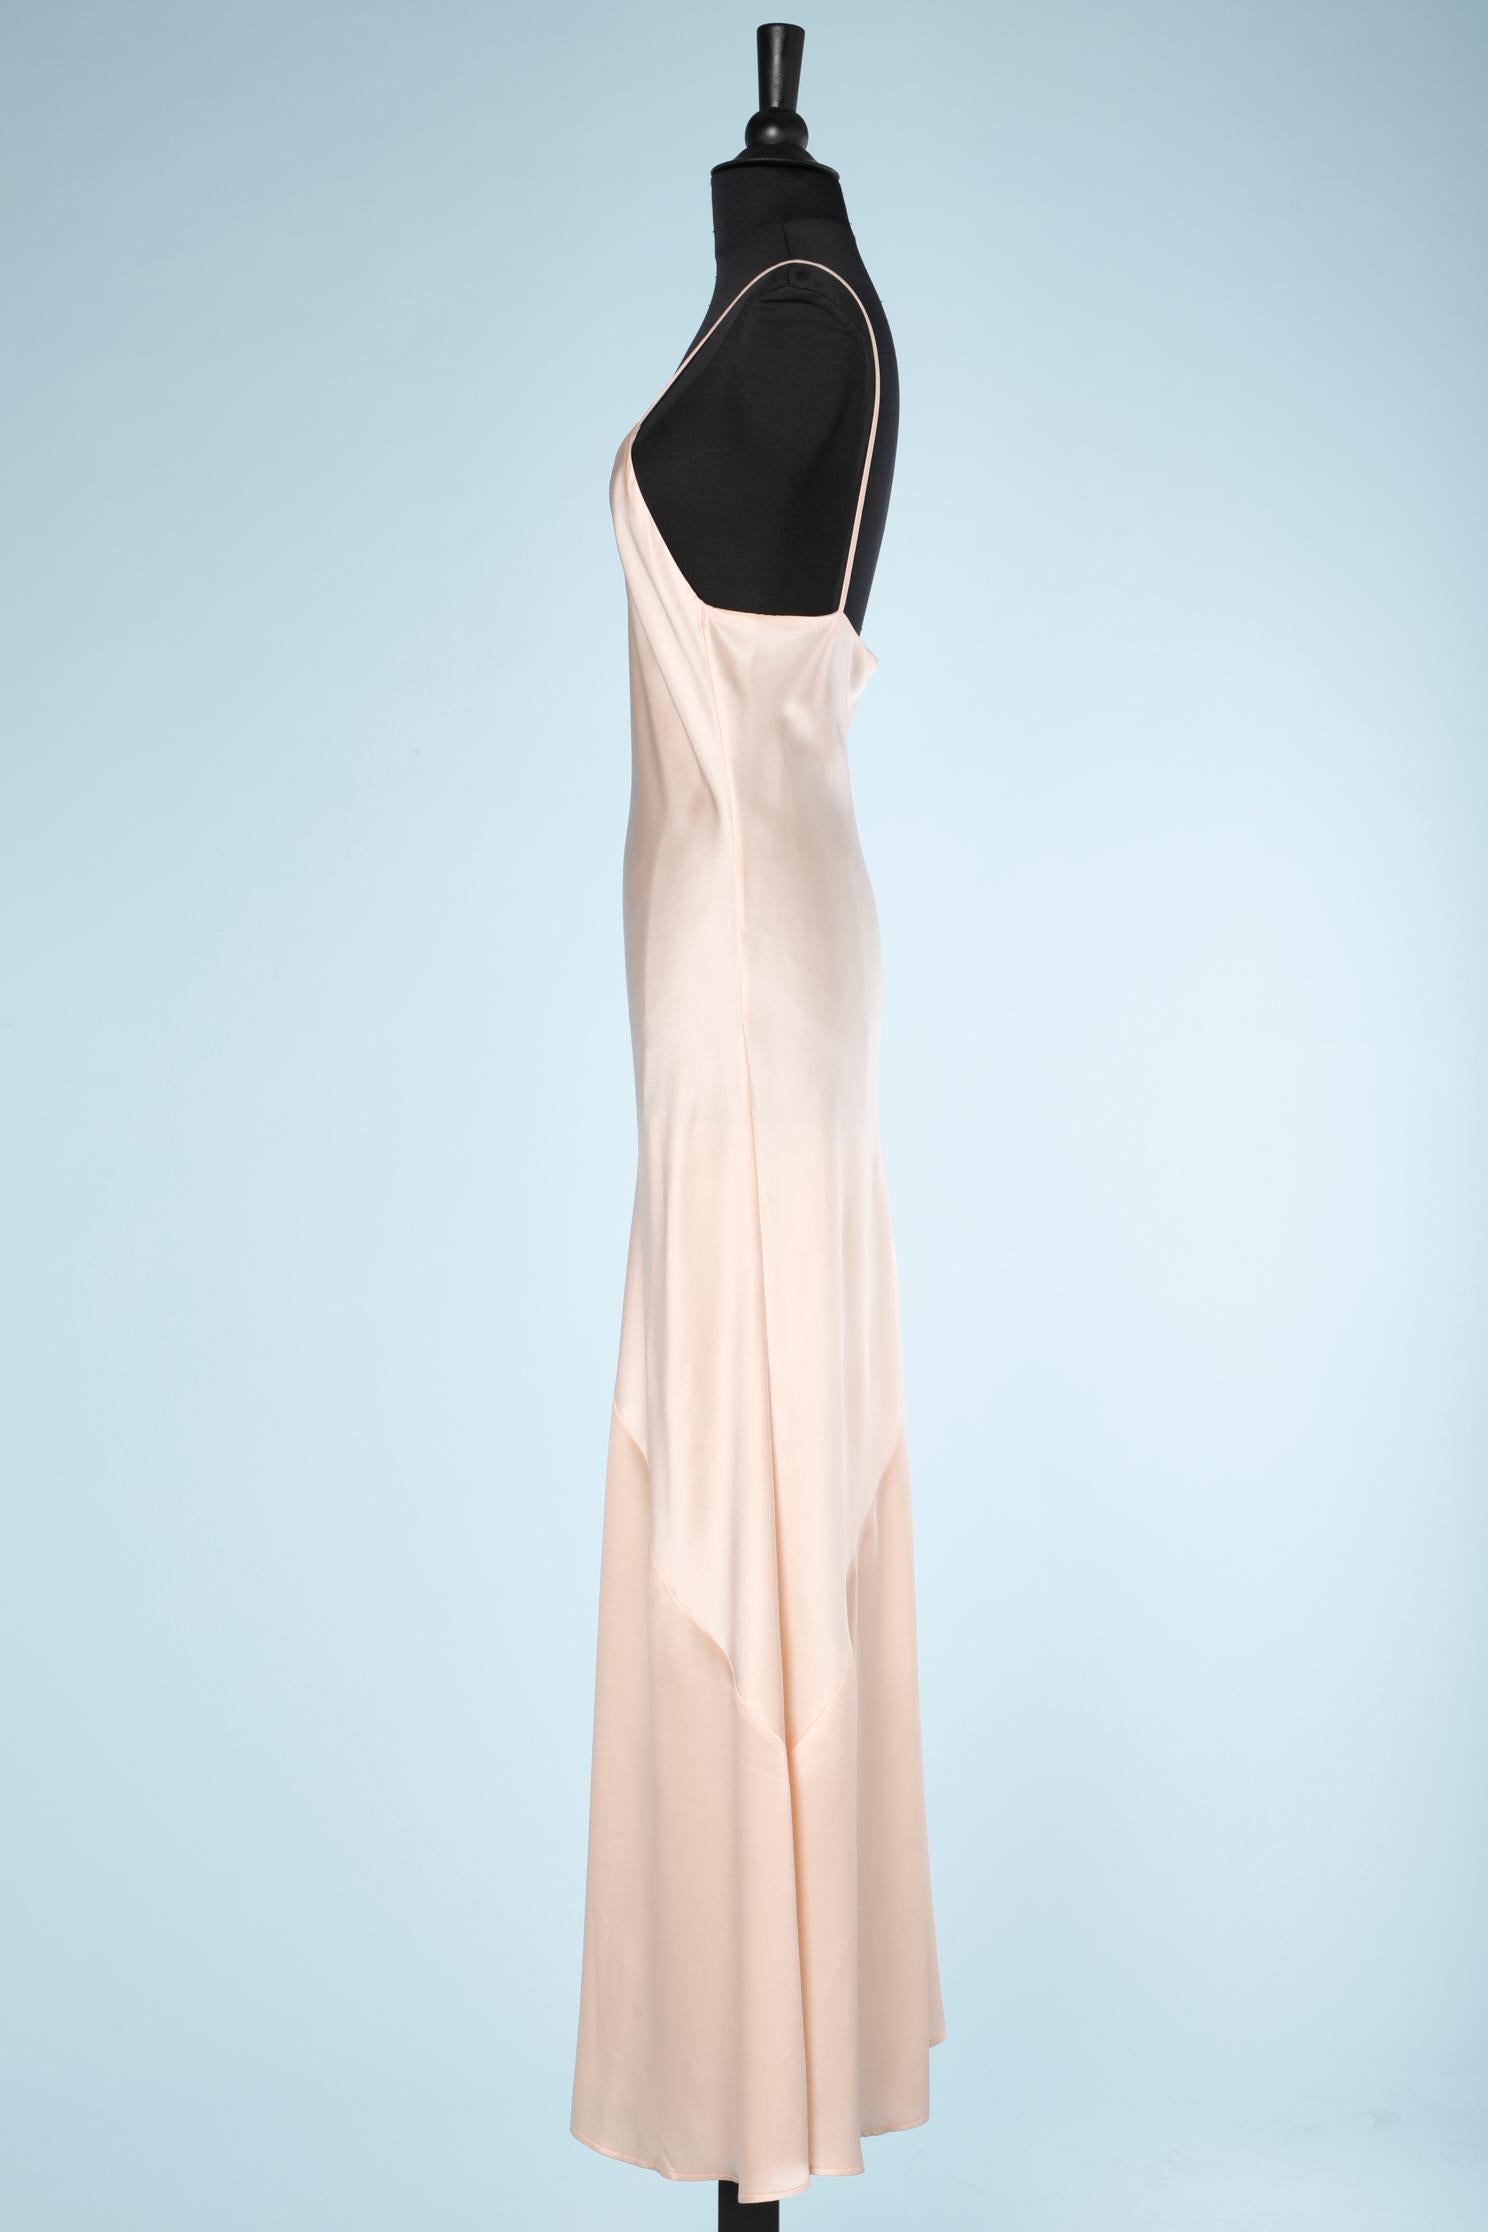 White Pale pink satin long slip-dress Chantal Thomass Circa 1990's  For Sale